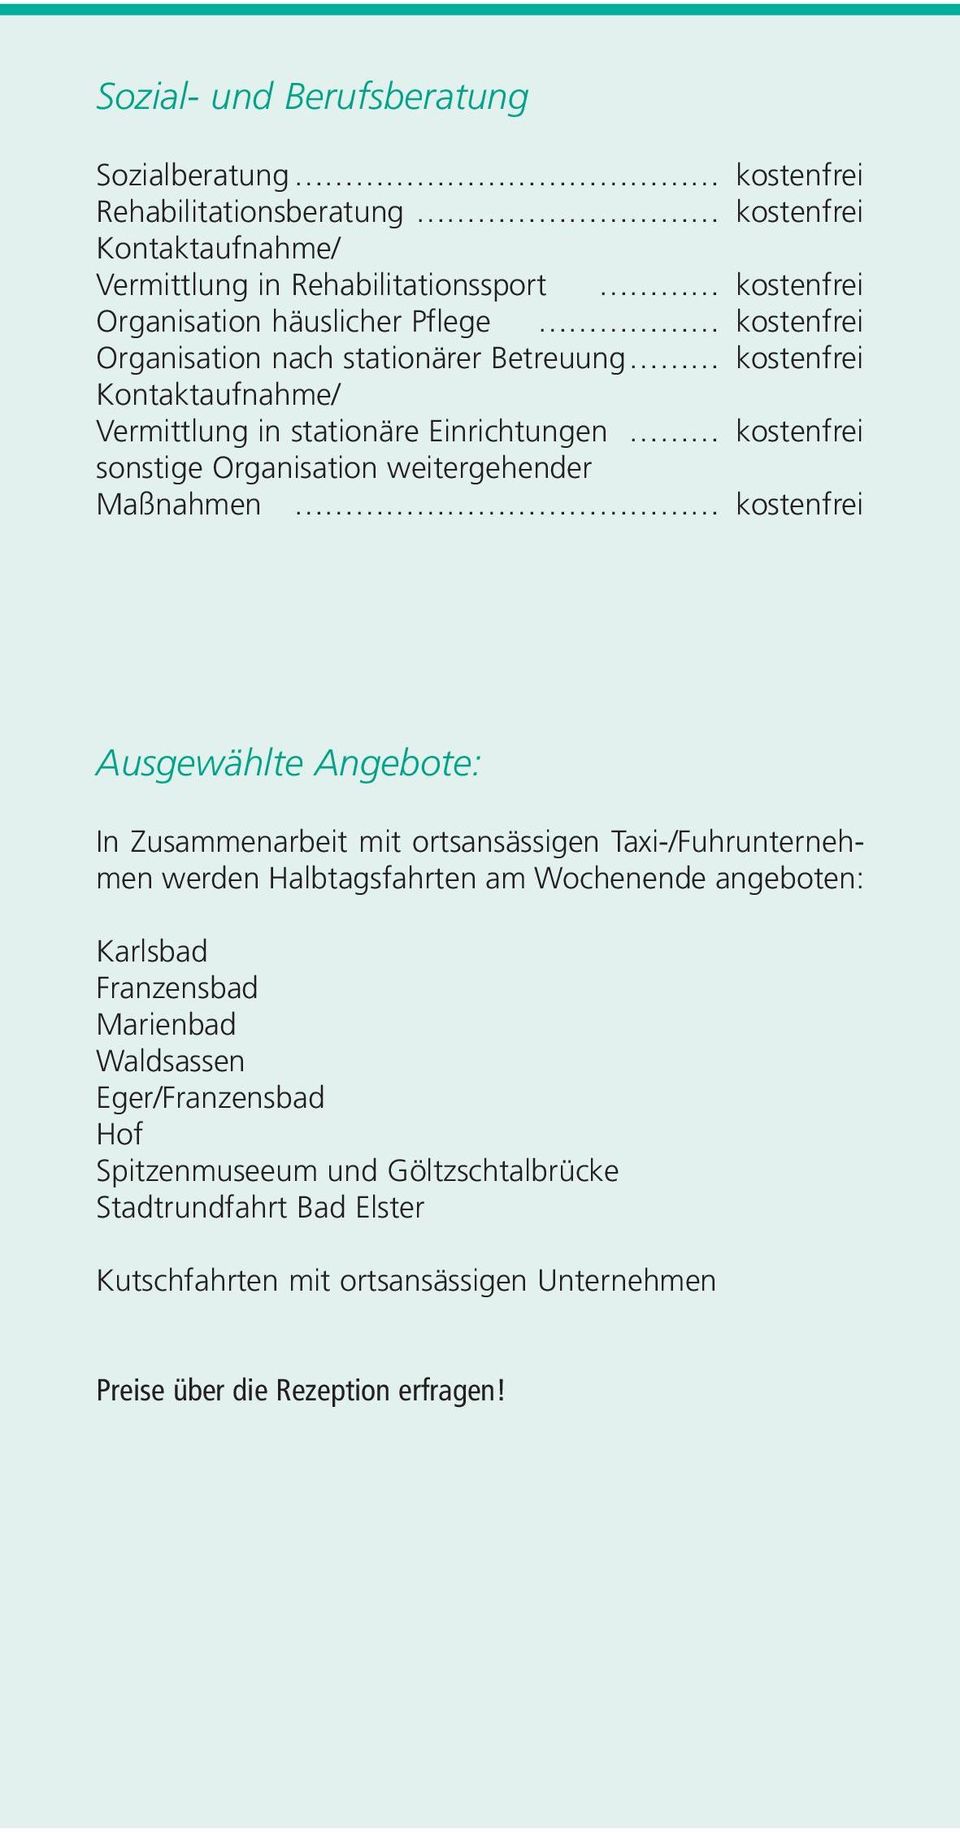 Maßnahmen kostenfrei Ausgewählte Angebote: In Zusammenarbeit mit ortsansässigen Taxi-/Fuhrunternehmen werden Halbtagsfahrten am Wochenende angeboten: Karlsbad Franzensbad